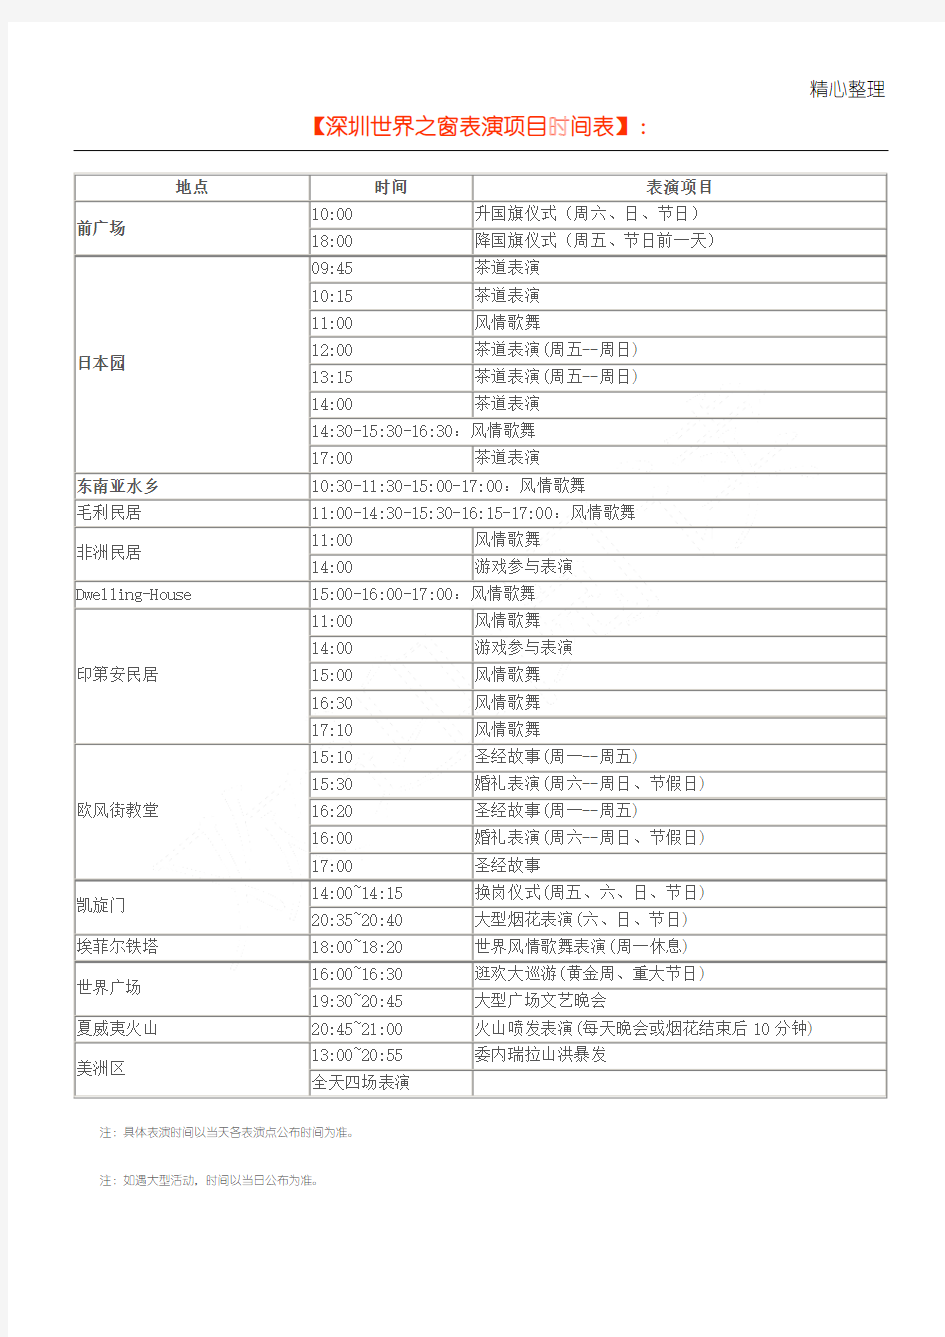 深圳世界之窗表演项目时间表